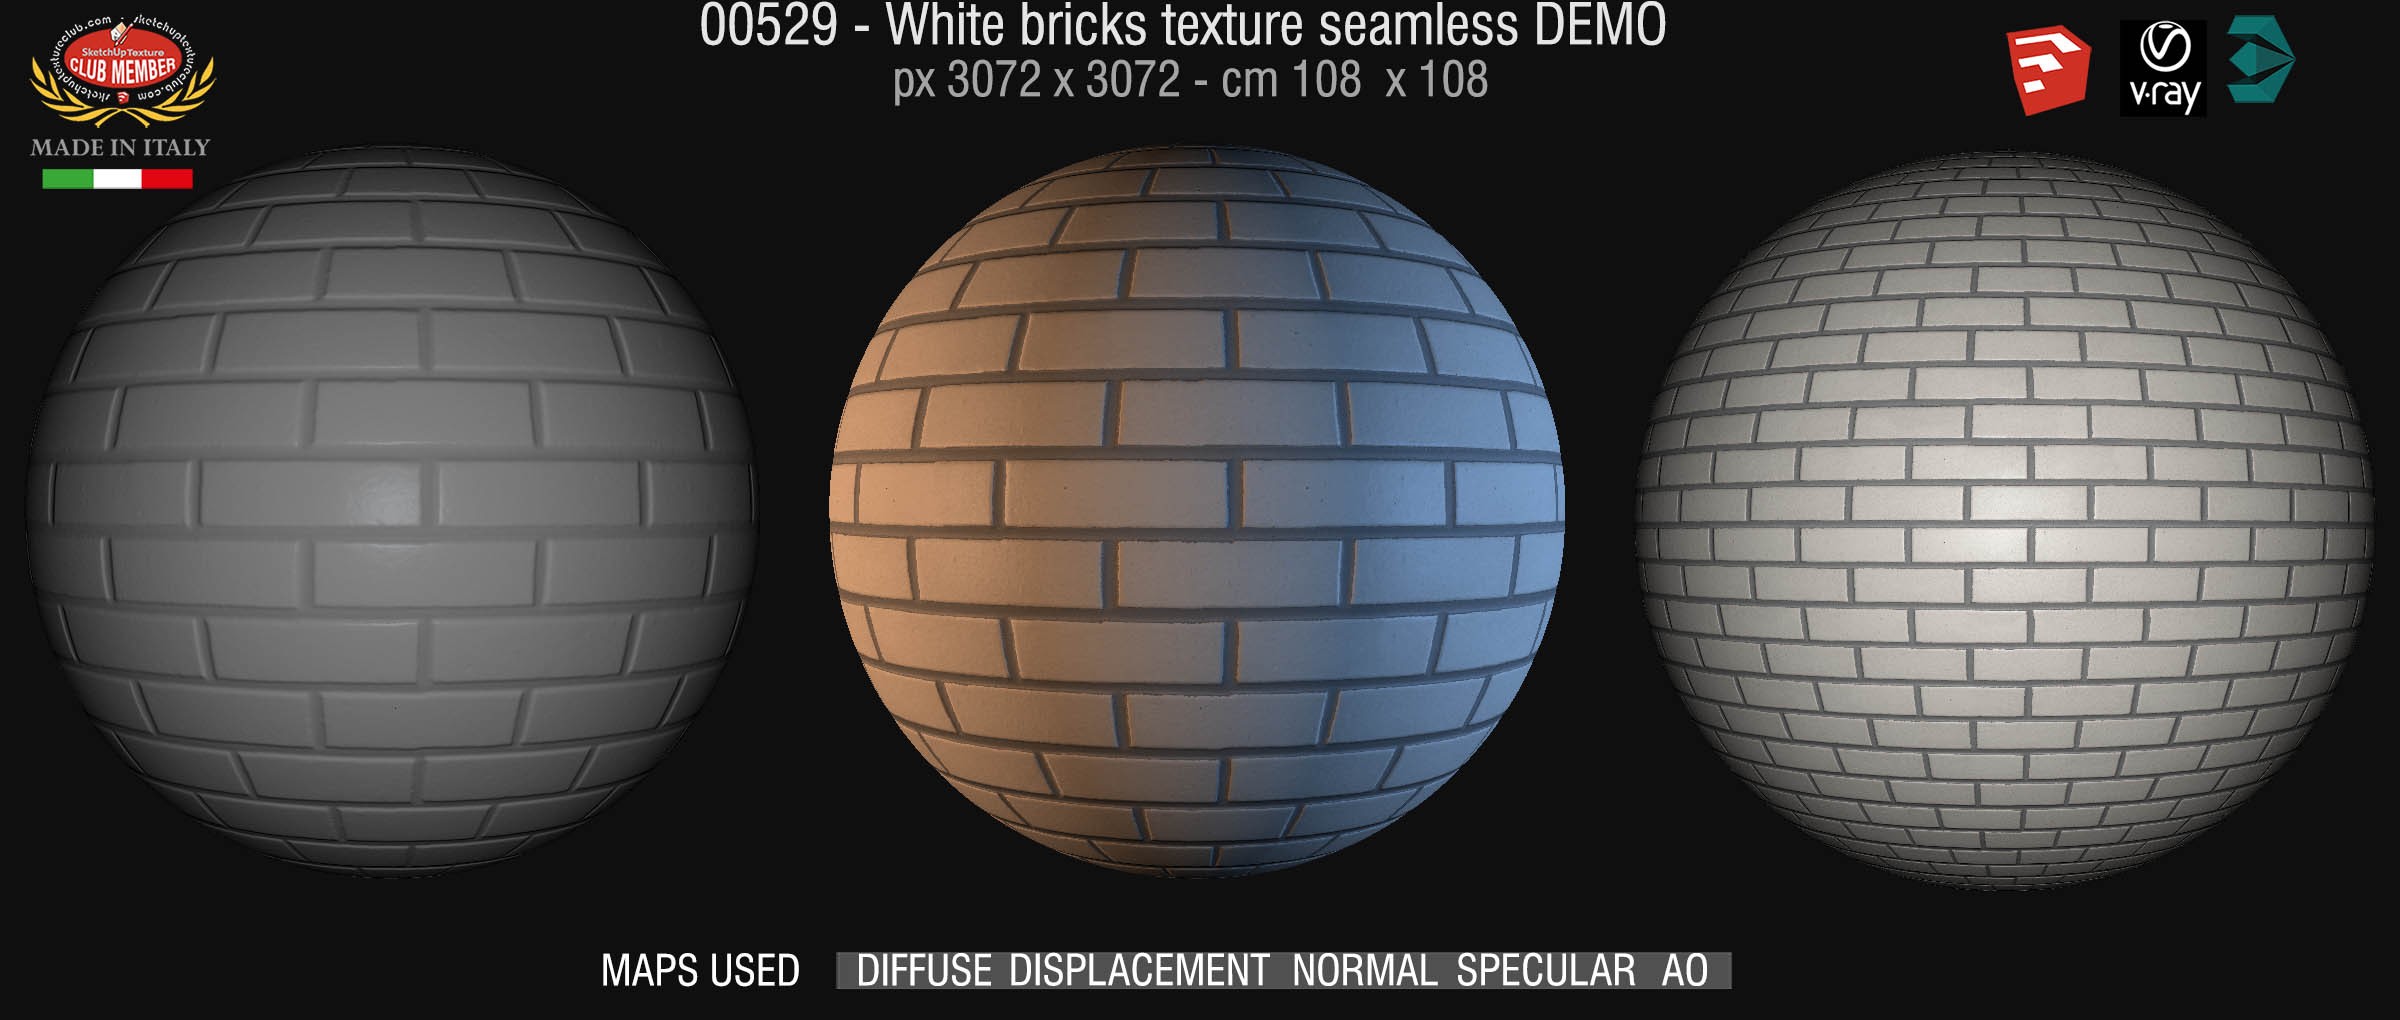 00529 White bricks texture seamless + maps DEMO